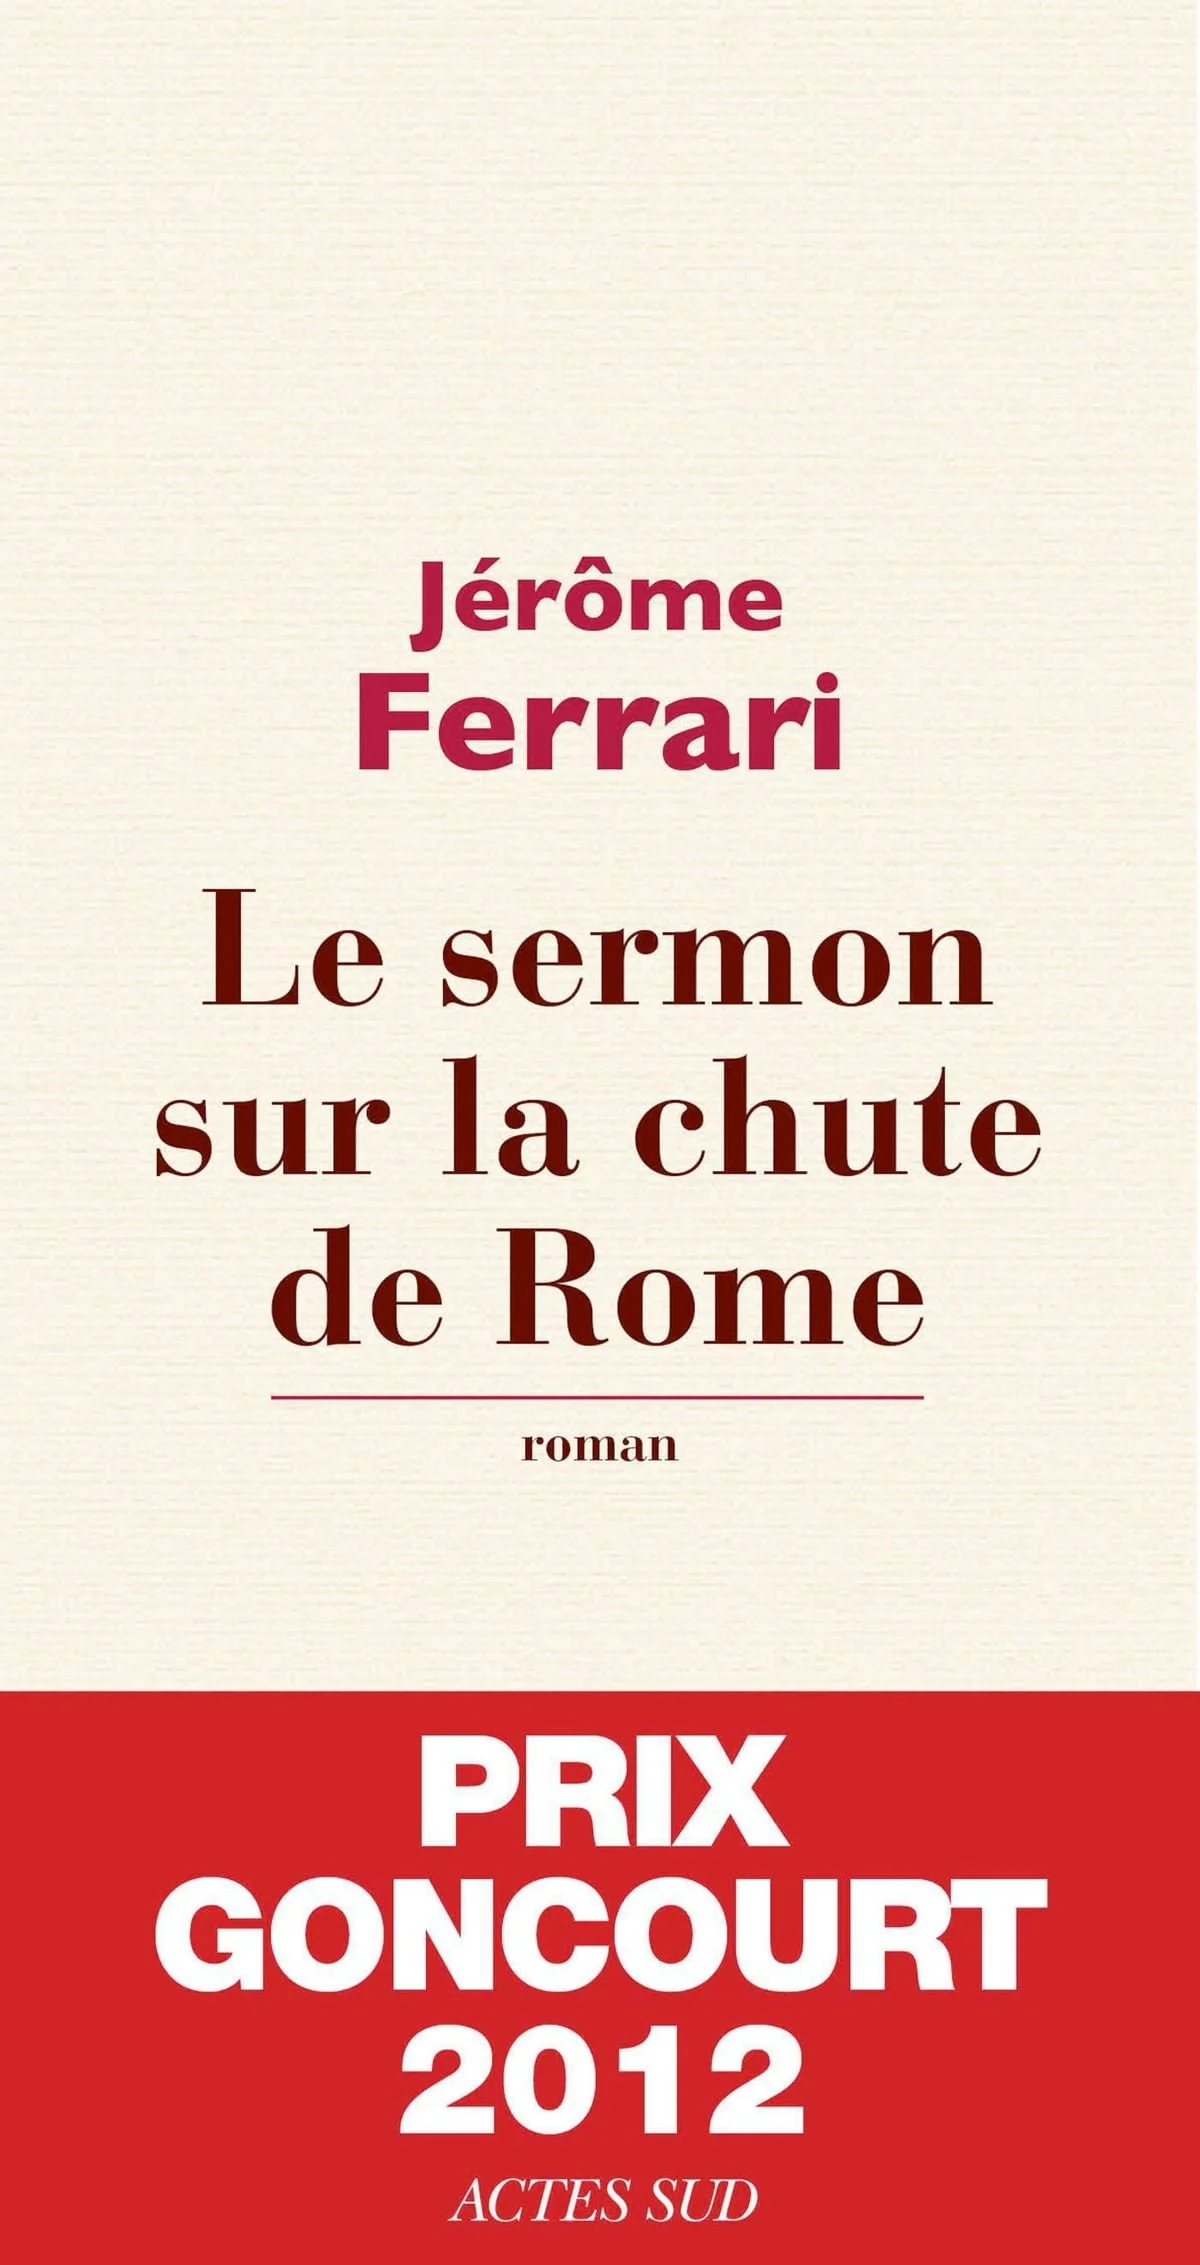 Le sermon de la chute de Rome – Jérome Ferrari